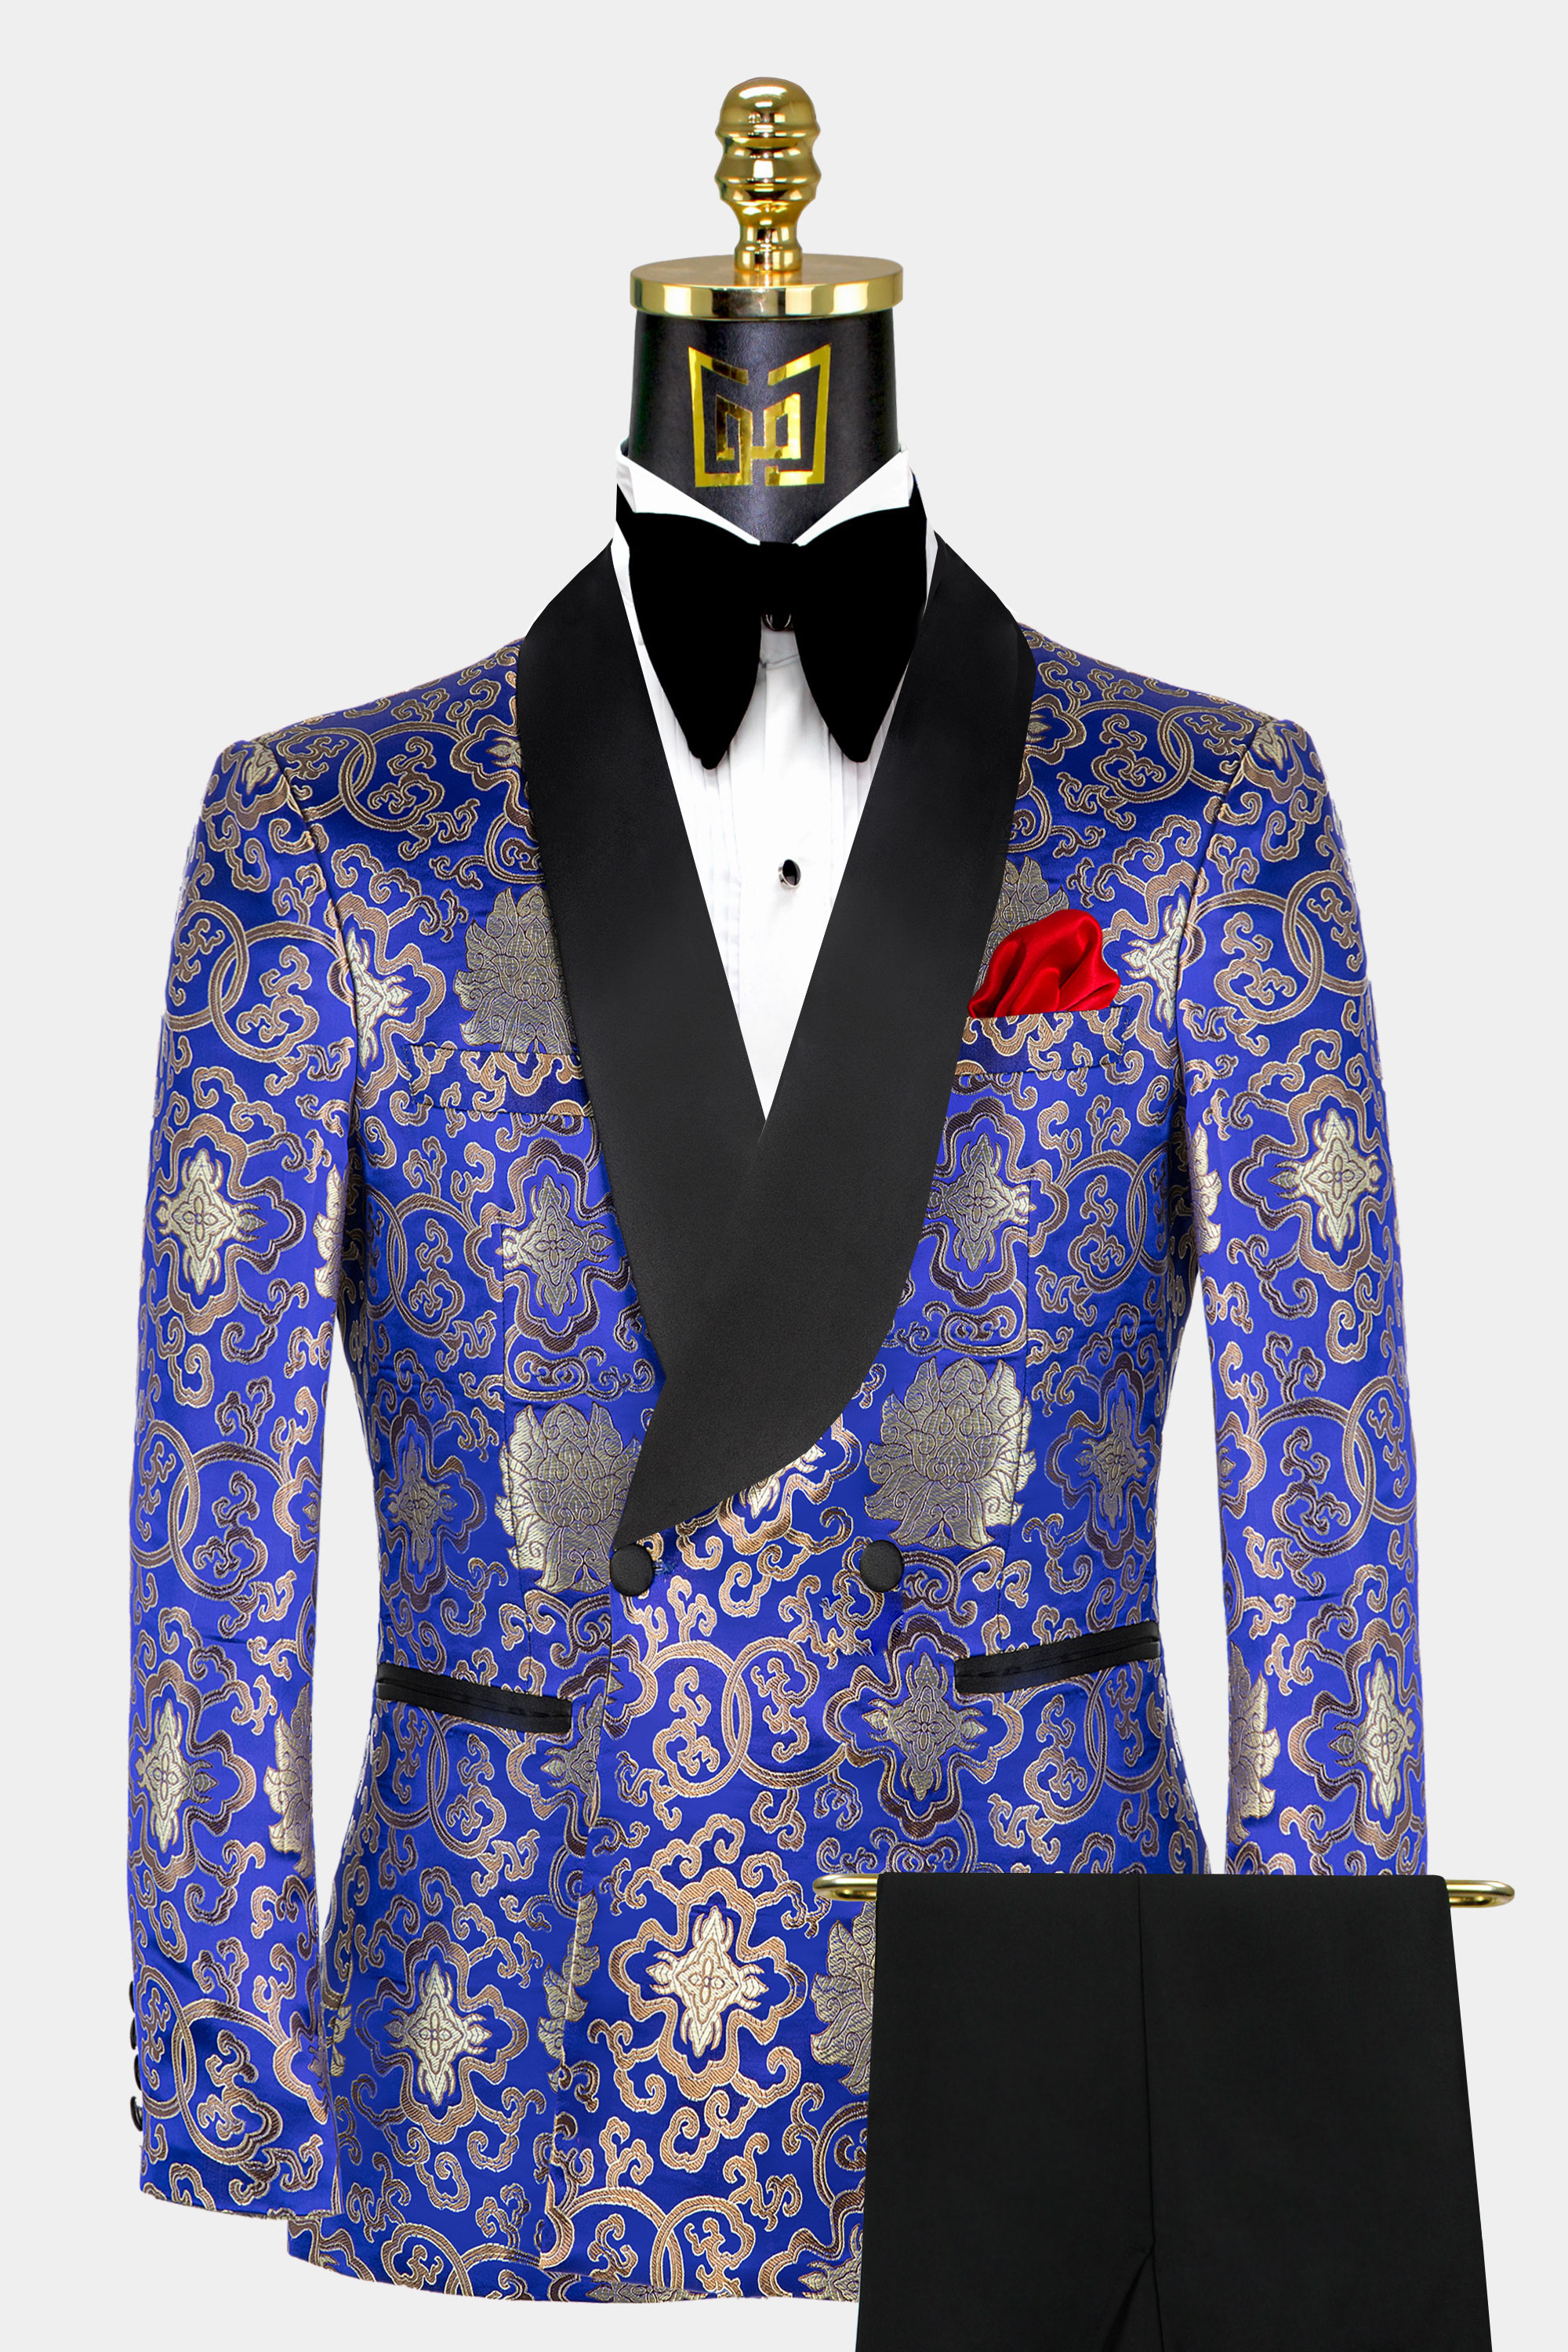 Blue-and-Gold-Tuxedo-Groom-Wedding-Suit-from-Gentlemansguru.com